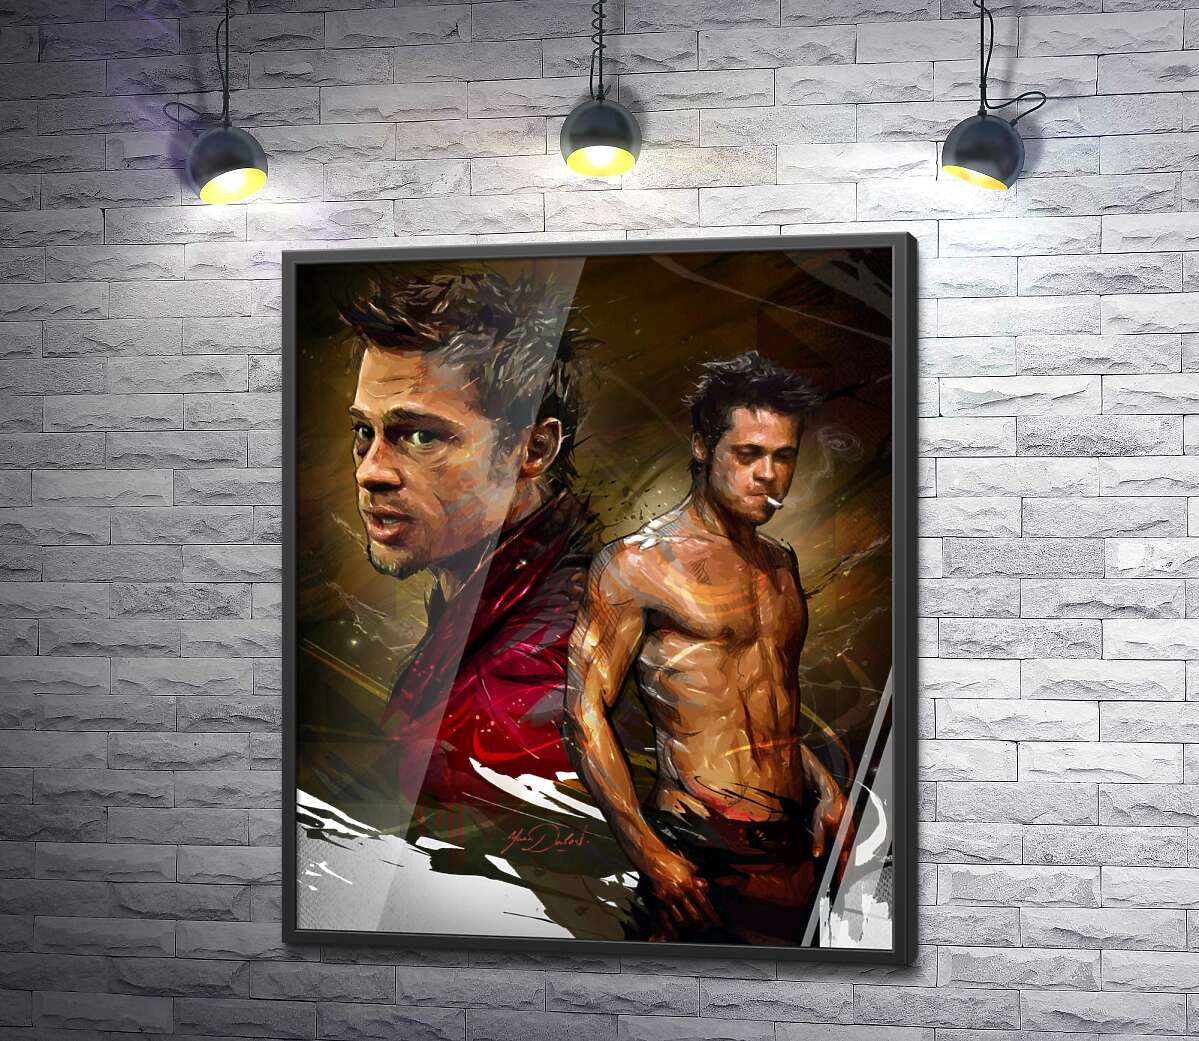 постер Актер Брэд Питт (Brad Pitt) в главной роли фильма "Бойцовский клуб" (Fight club)